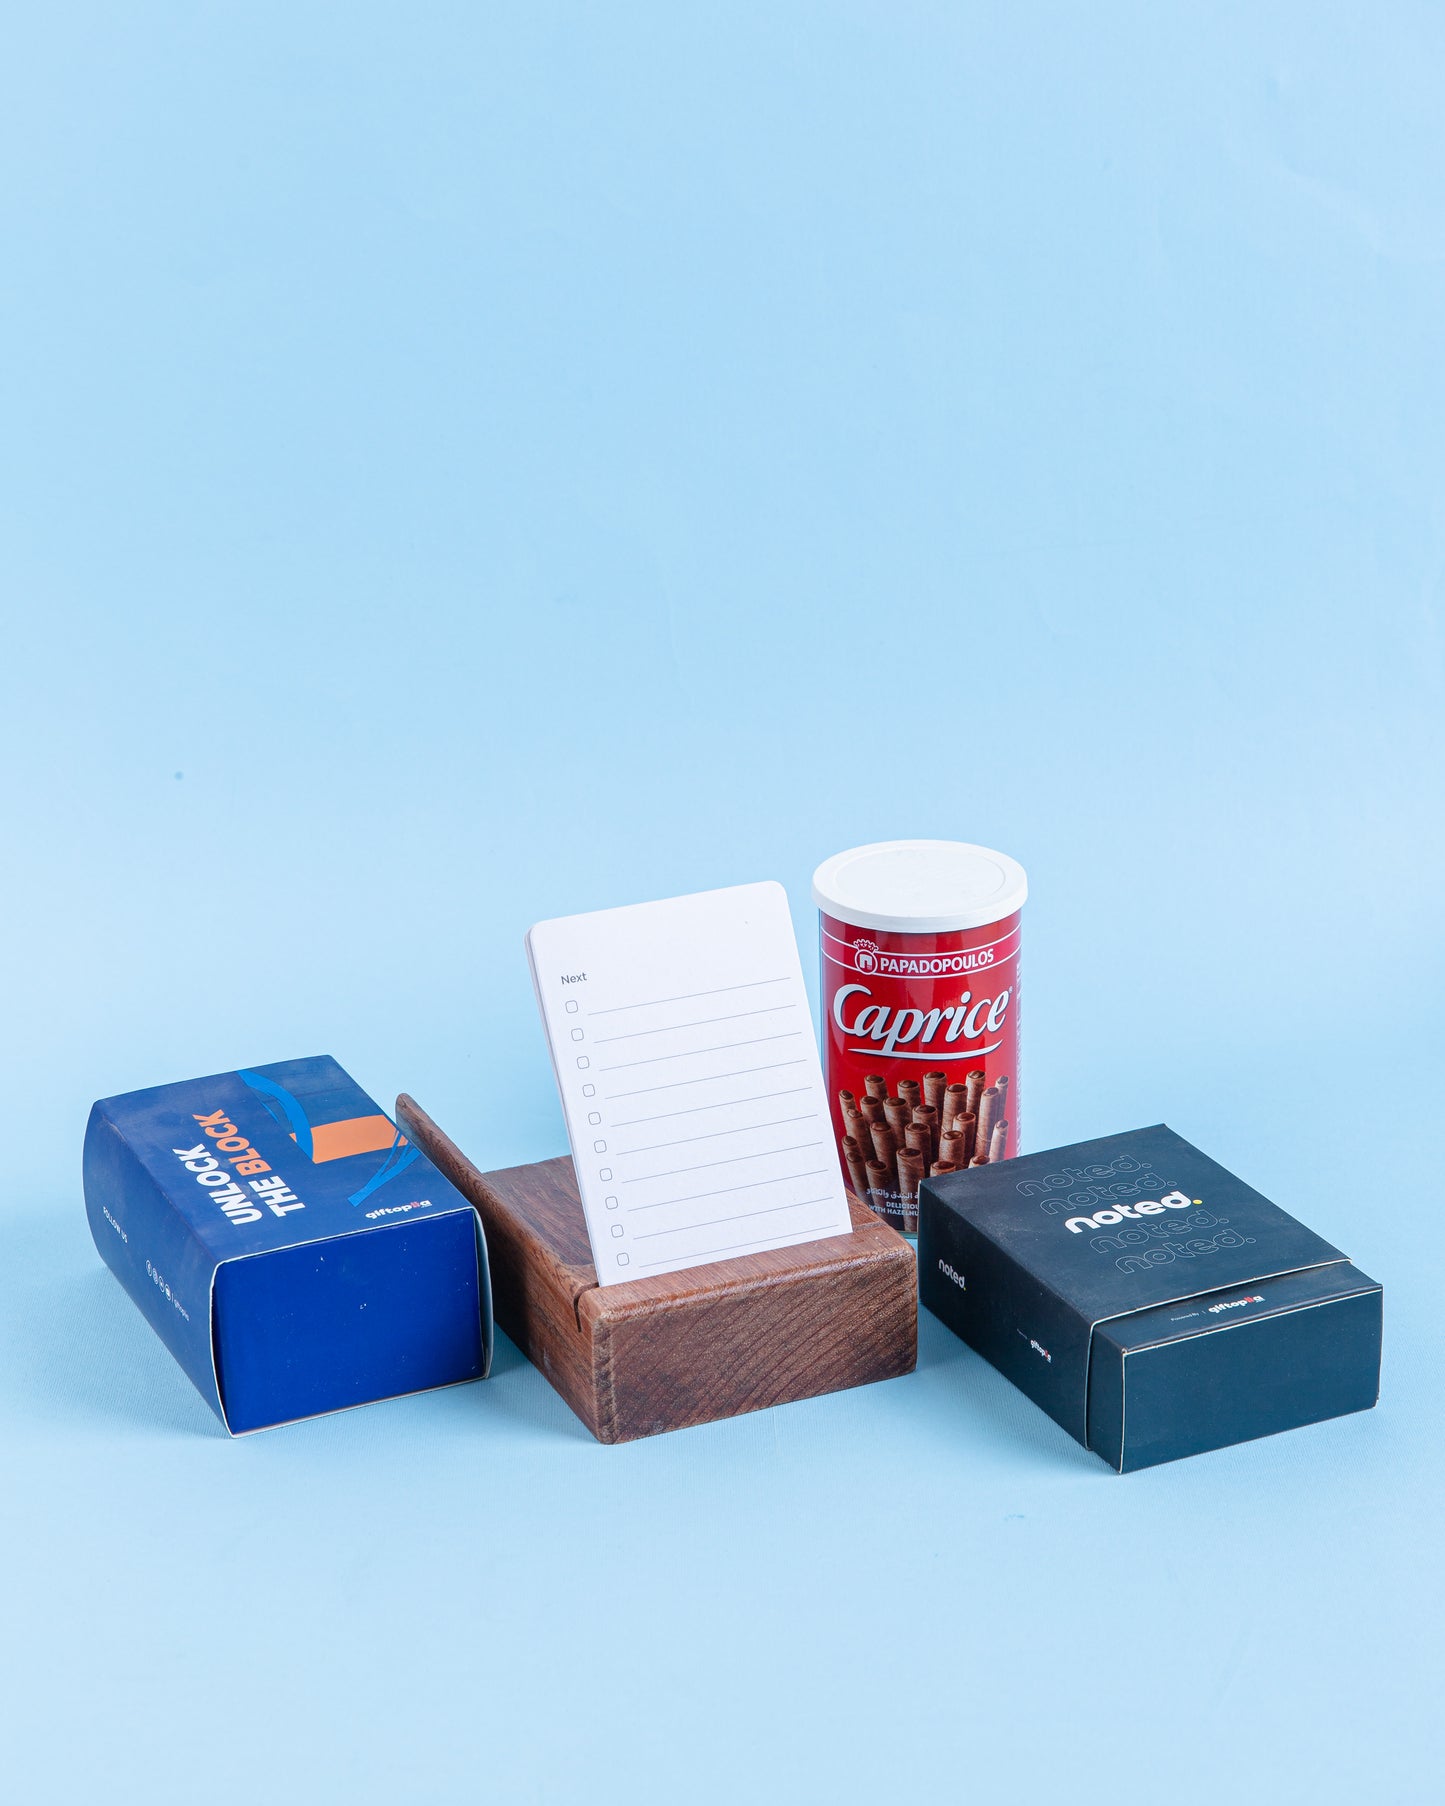 
                  
                    BloomBox-Desk Essentials Gift Box
                  
                